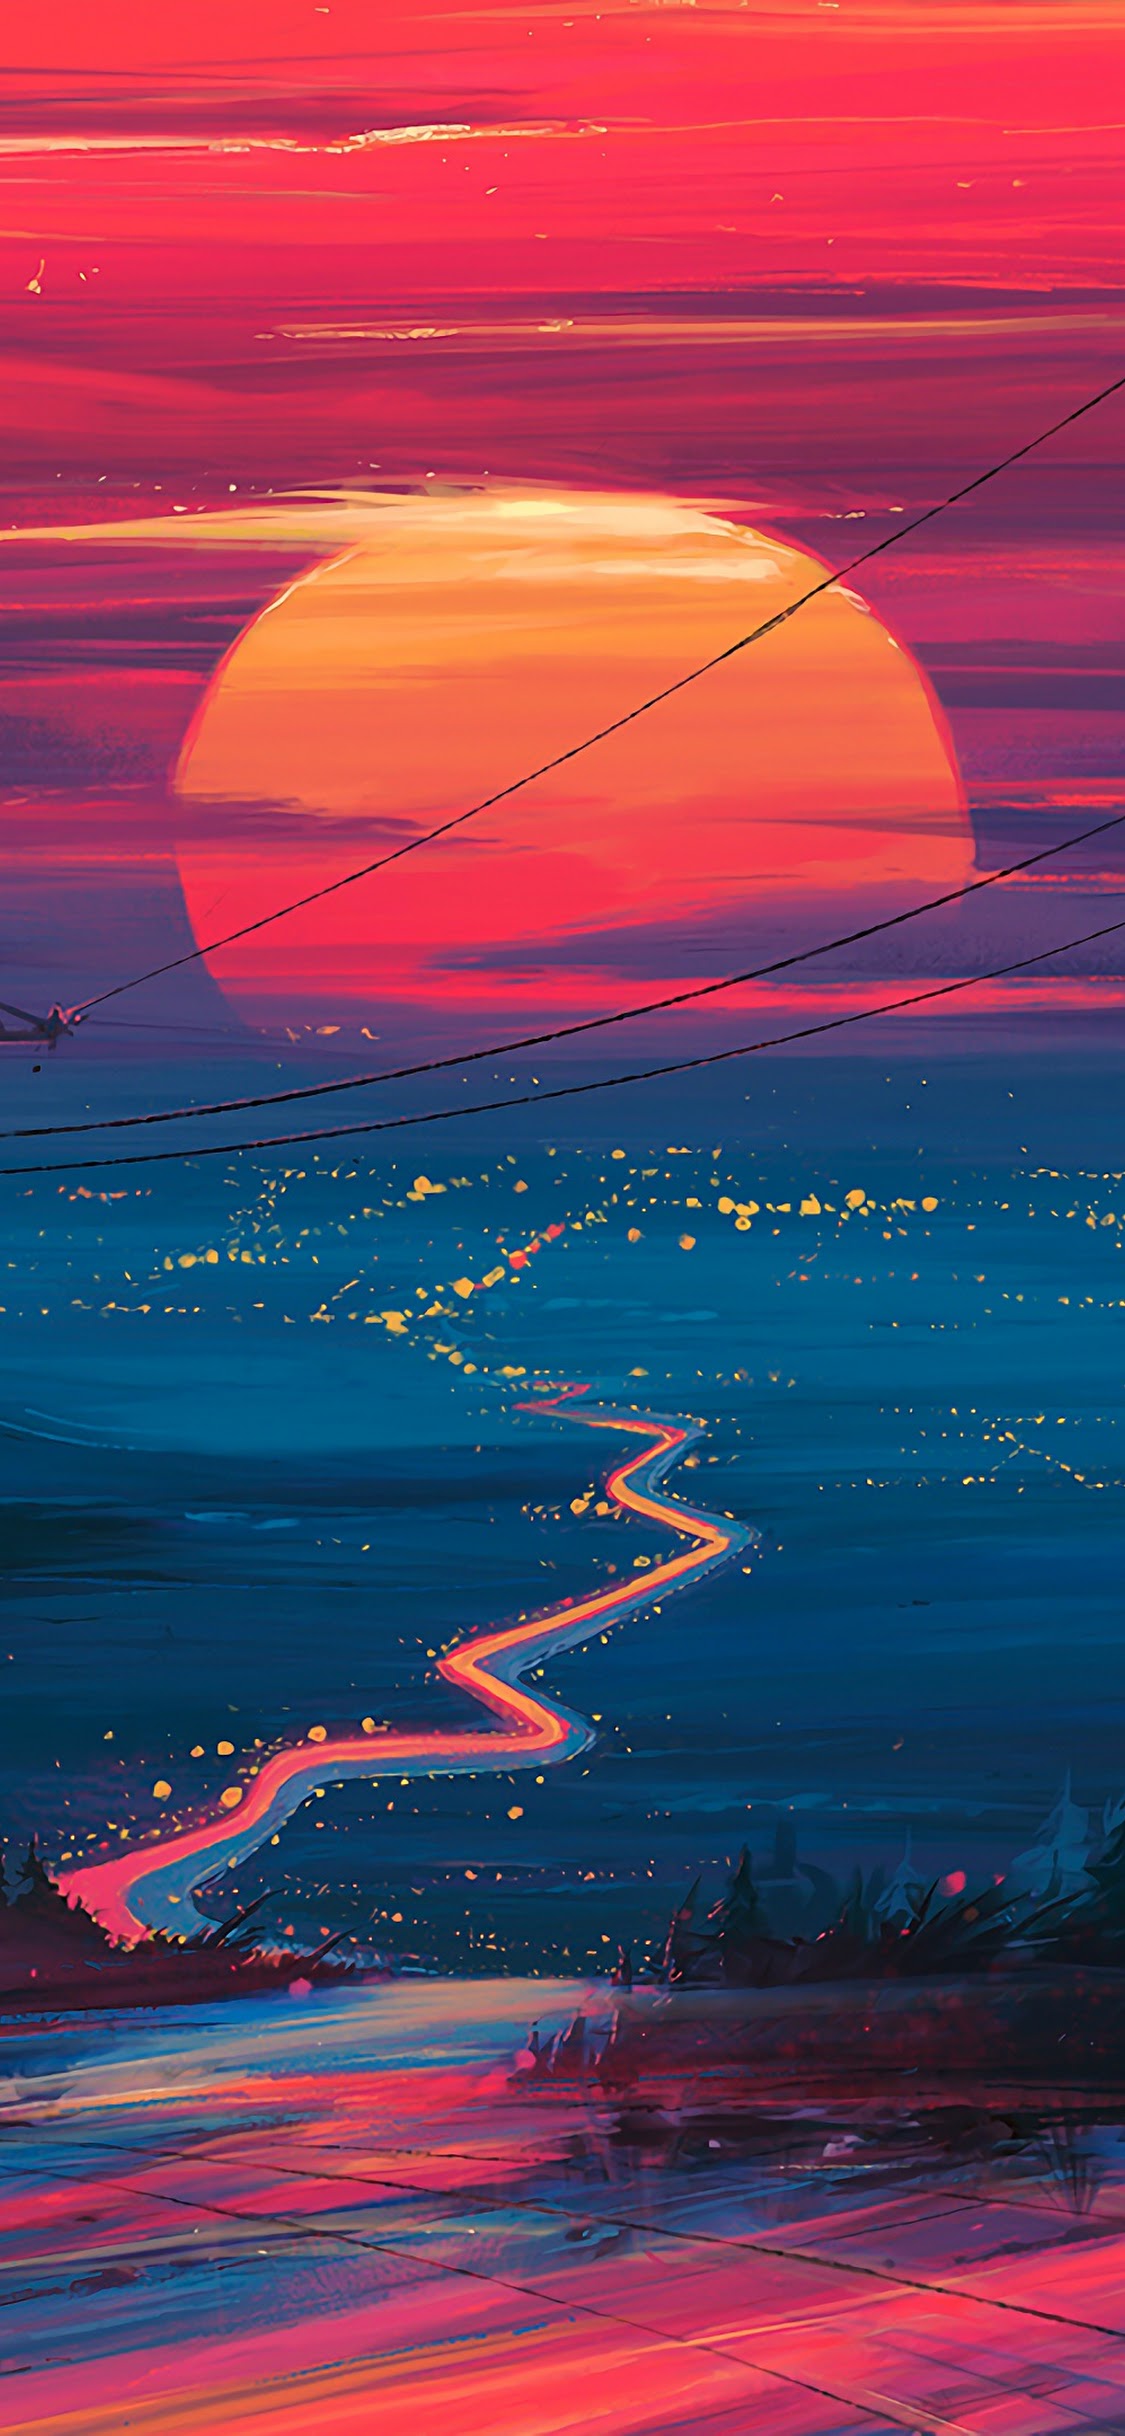 Sunset Horizon Scenery Landscape Art 4k Wallpaper 178